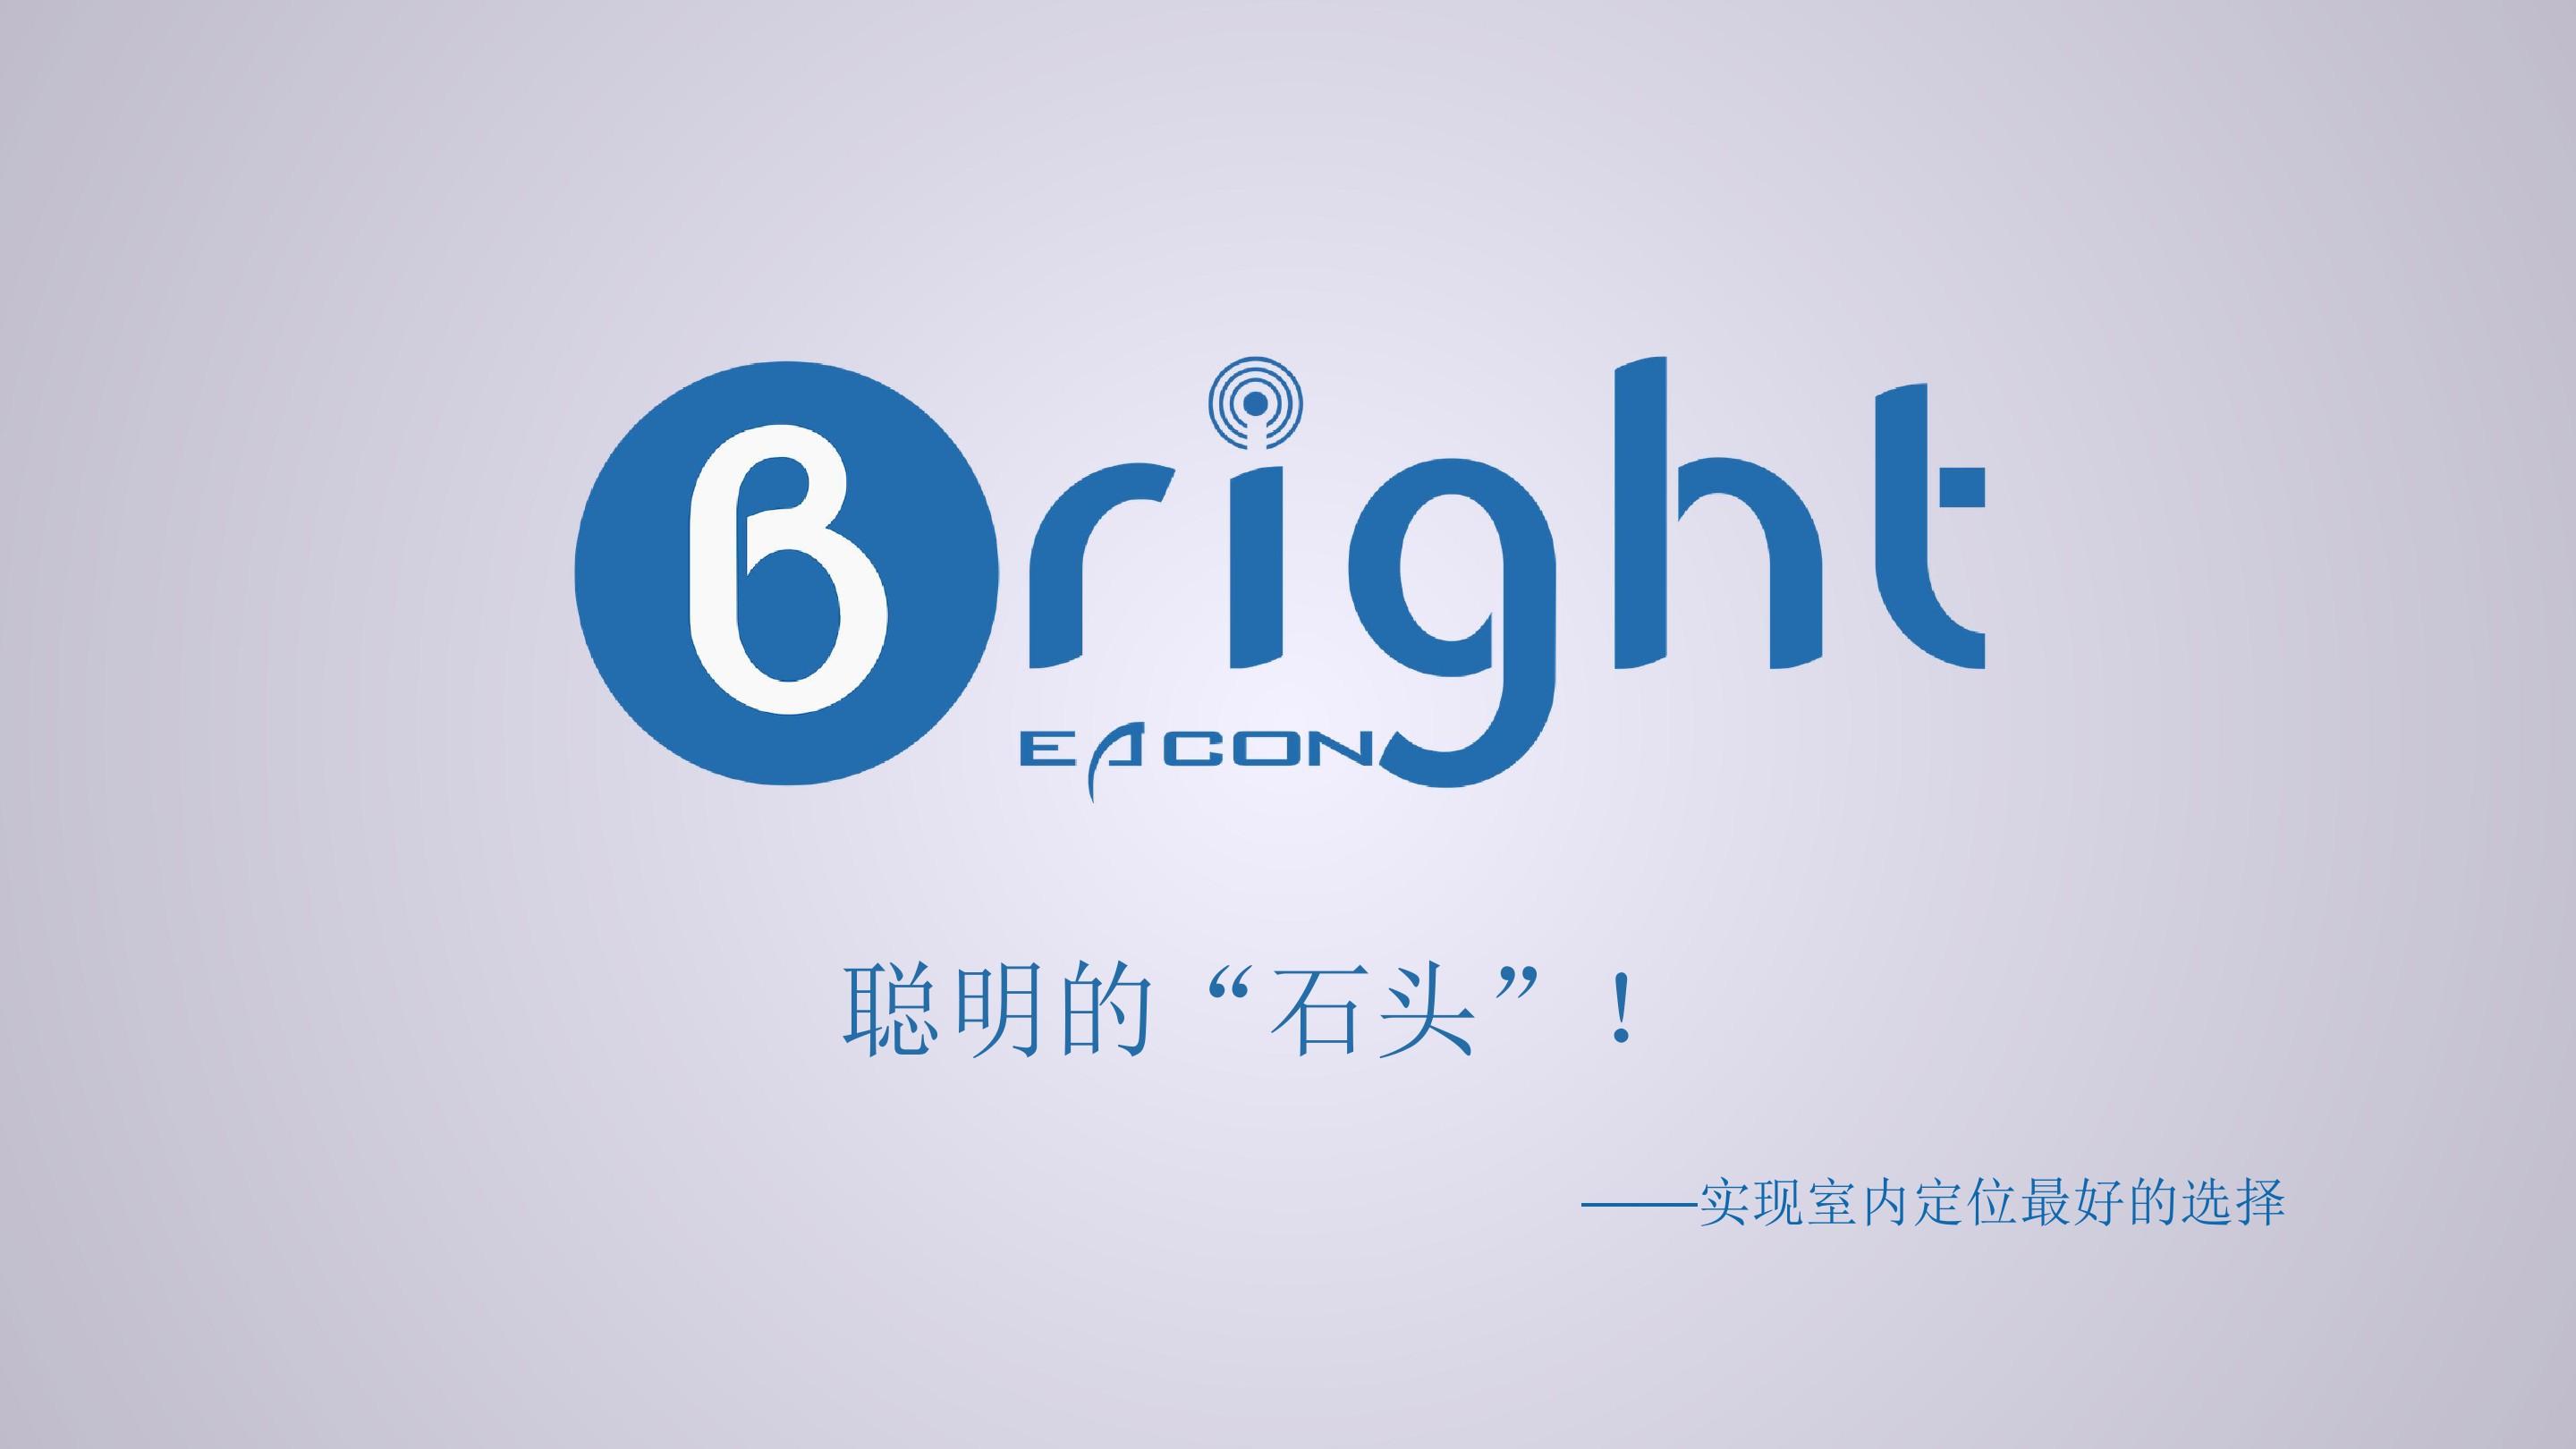 bright_beacon介绍-ibeacon案例典范